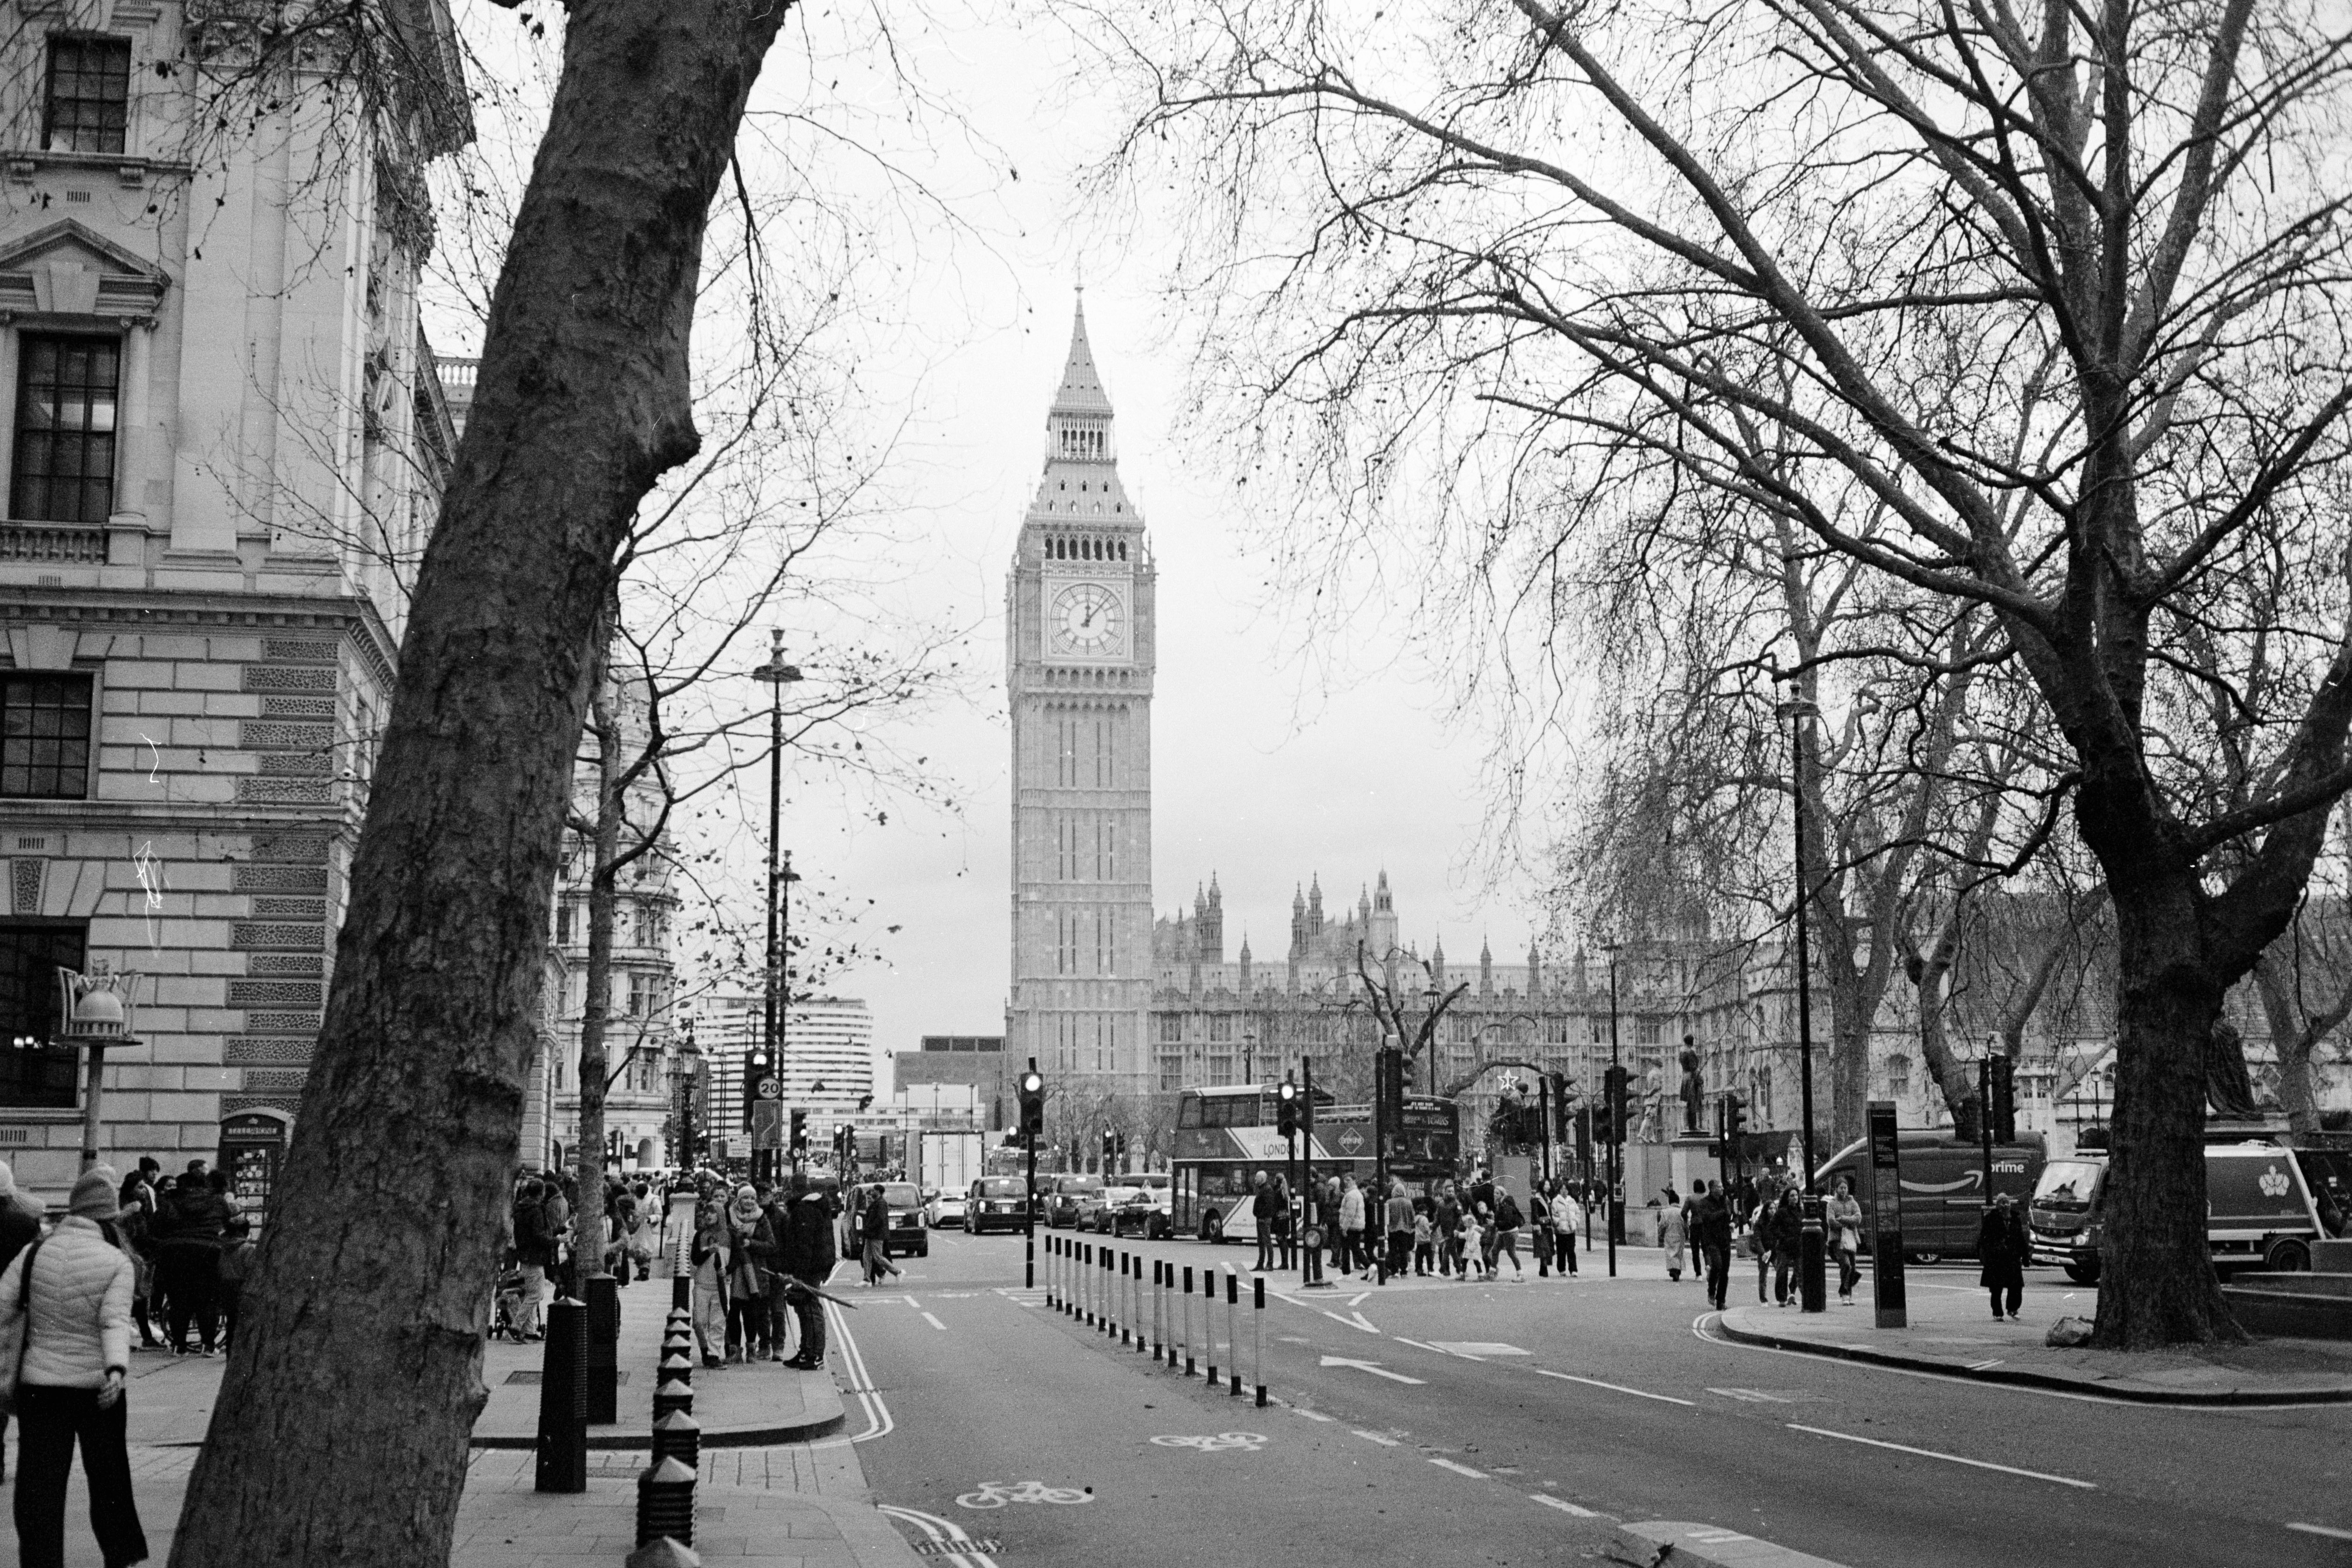 تم التقاط ساعة بيج بن في لندن بفيلم Ilford XP2 Super 35mm